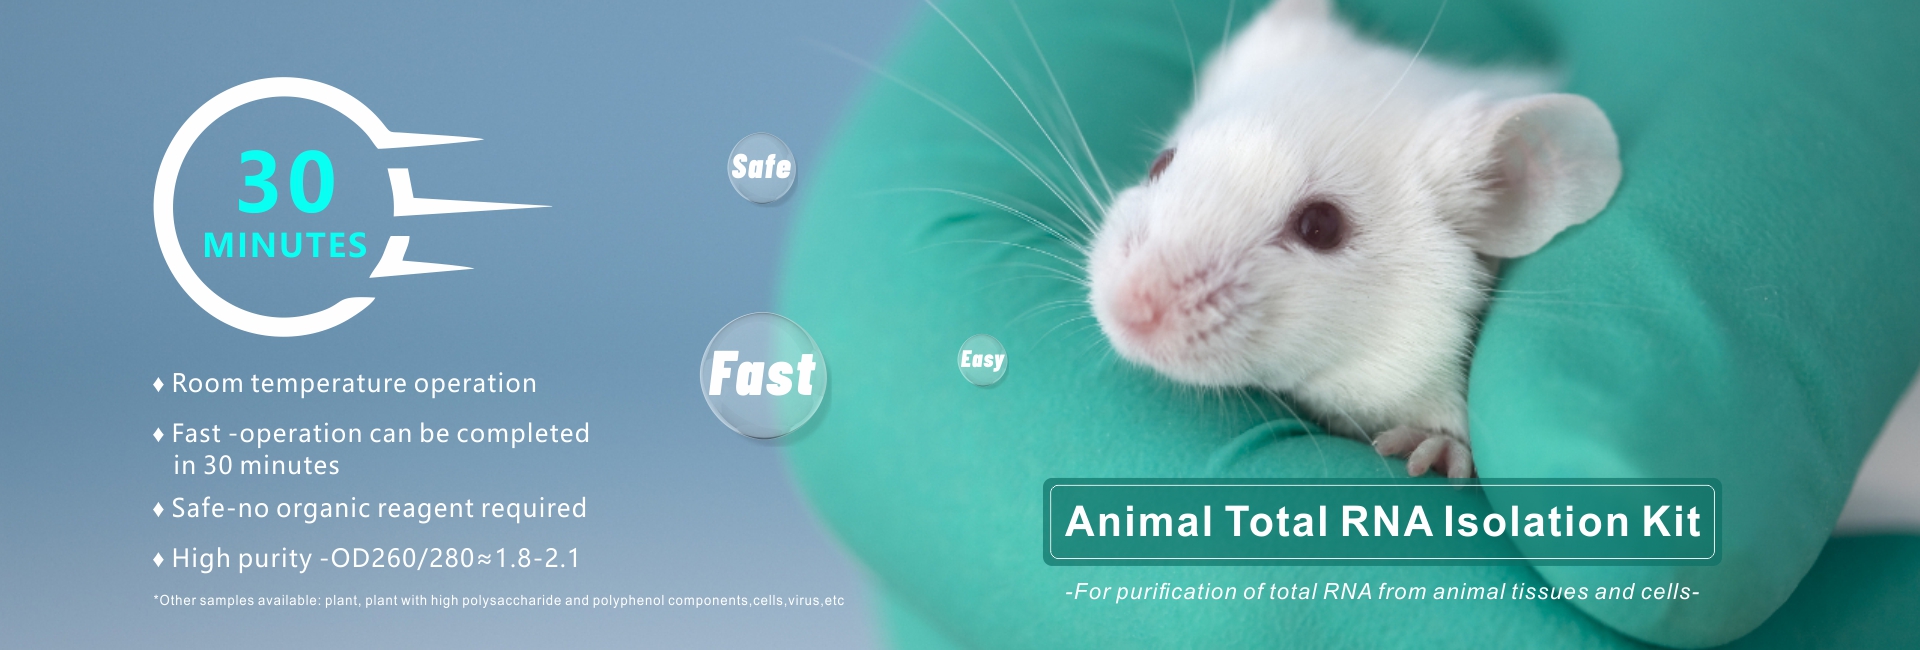 animalsk total RNA isolation kit --banner